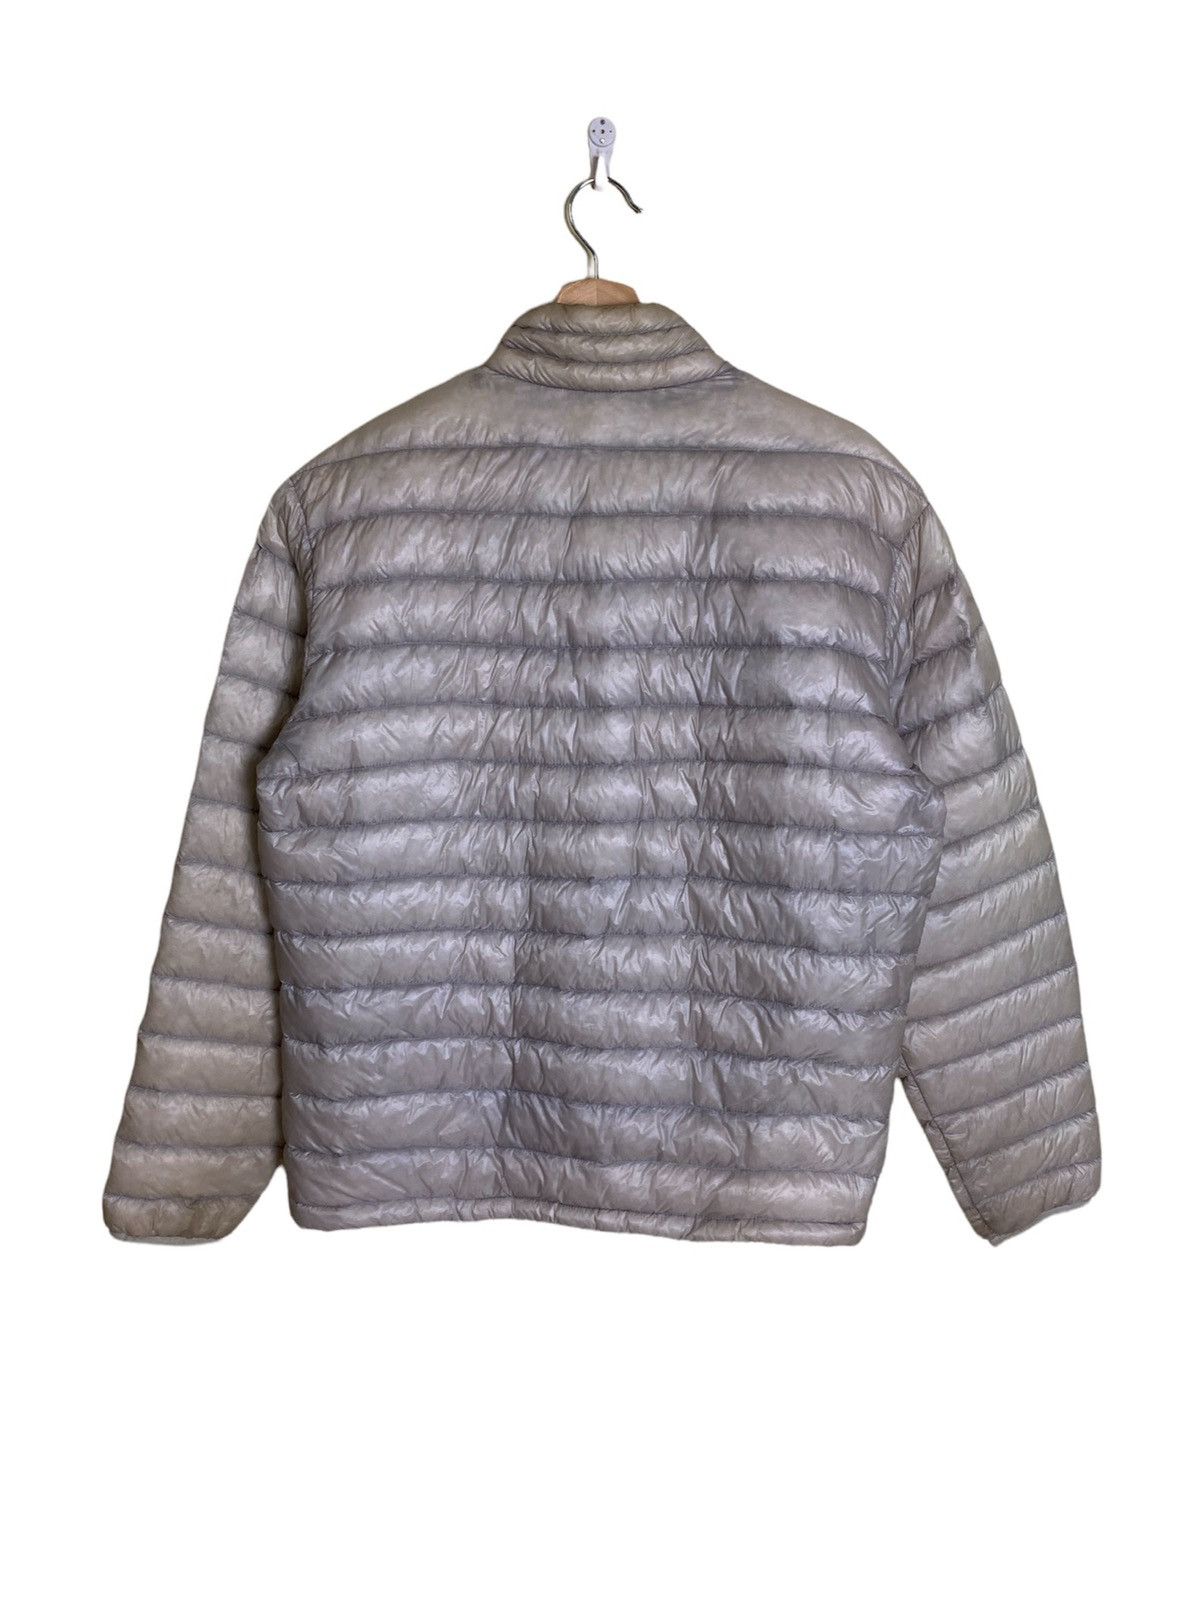 Patagonia Down Sweater Jacket - 5